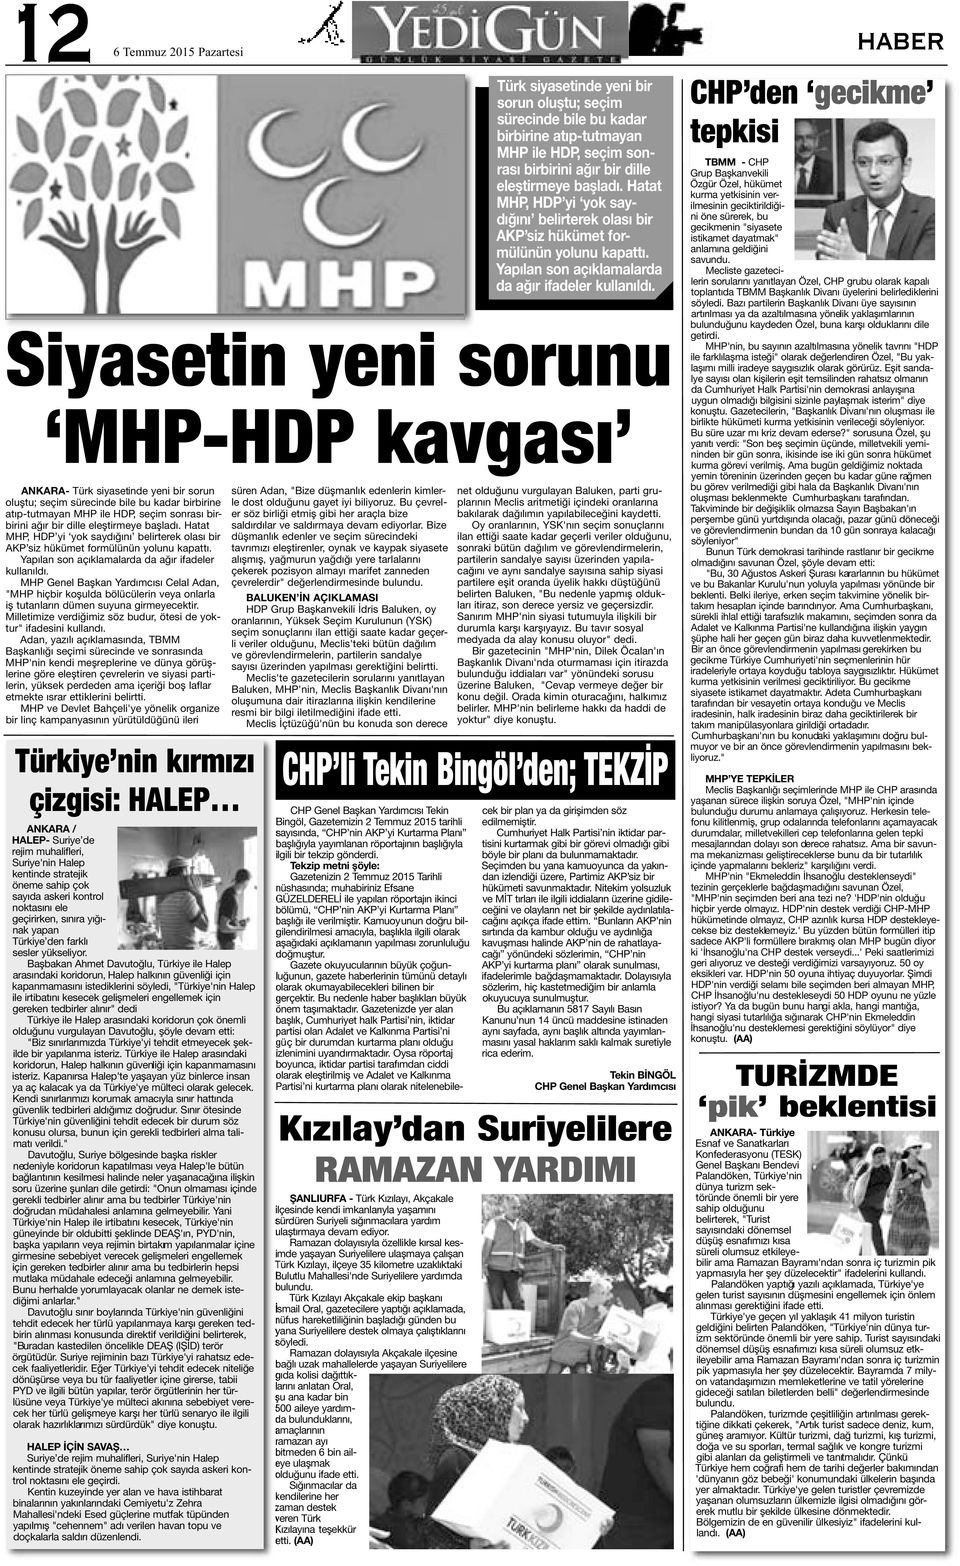 MHP Genel Başkan Yardımcısı Celal Adan, "MHP hiçbir koşulda bölücülerin veya onlarla iş tutanların dümen suyuna girmeyecektir. Milletimize verdiğimiz söz budur, ötesi de yoktur" ifadesini kullandı.